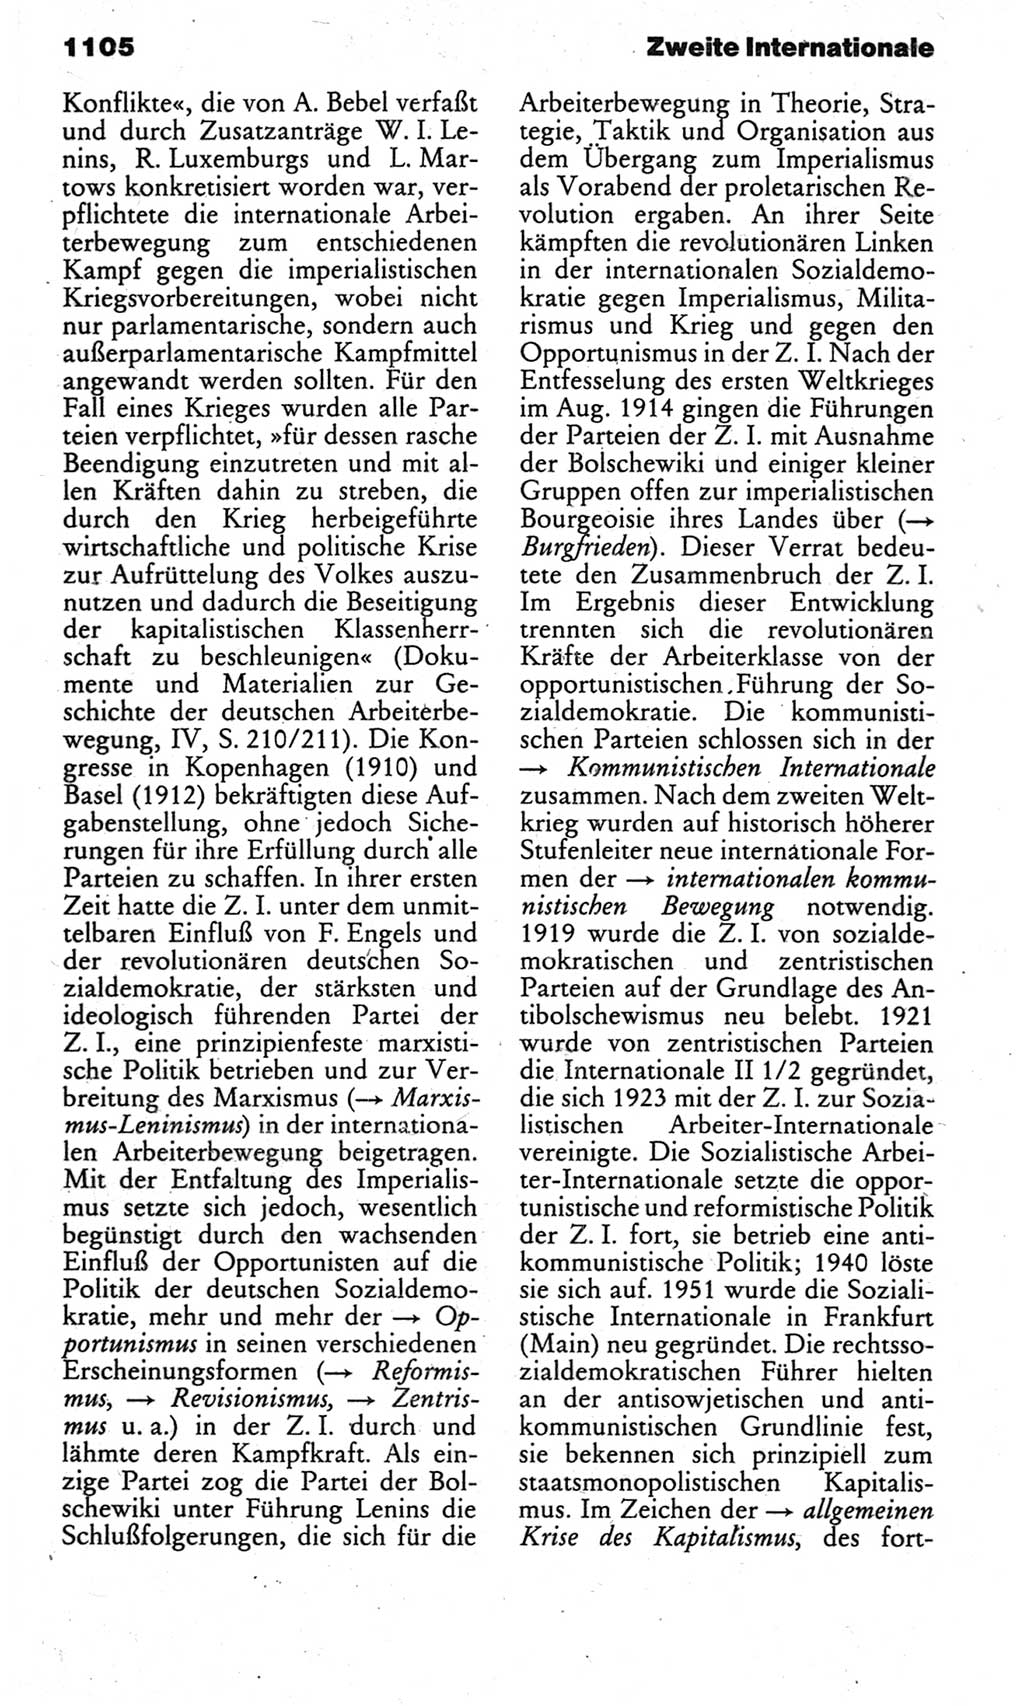 Kleines politisches Wörterbuch [Deutsche Demokratische Republik (DDR)] 1983, Seite 1105 (Kl. pol. Wb. DDR 1983, S. 1105)